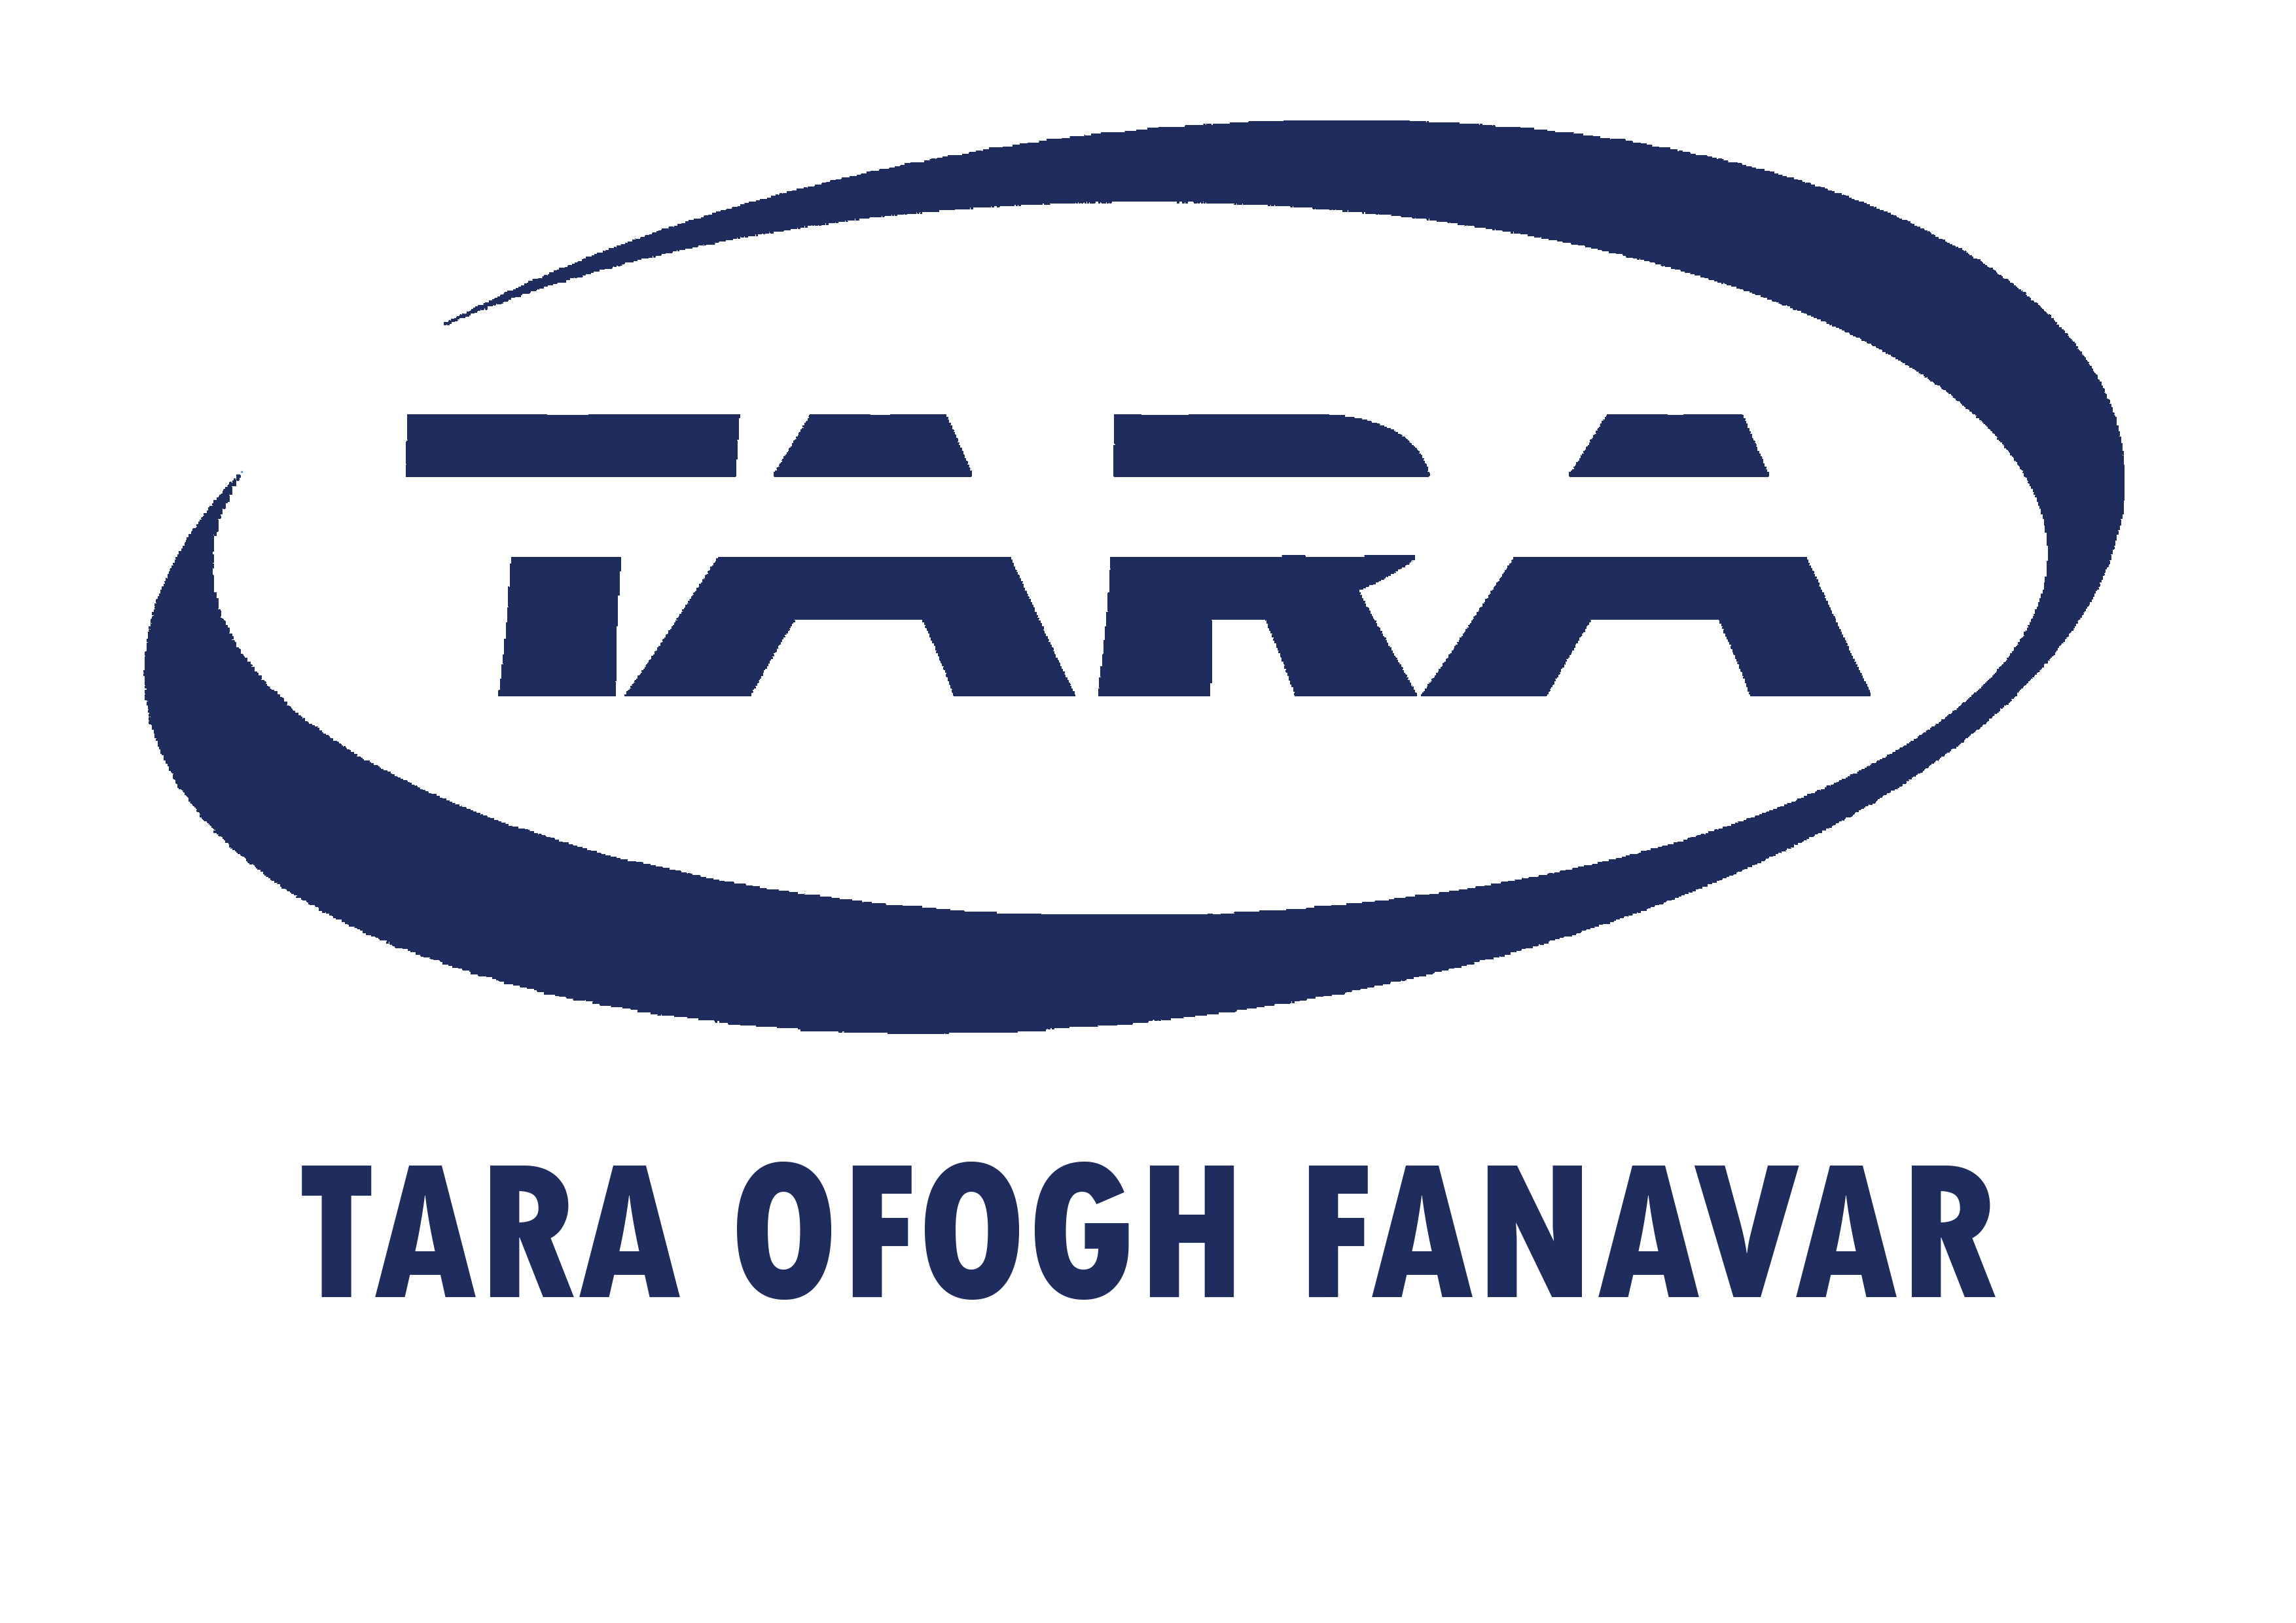 Tara Ofogh Fanavar